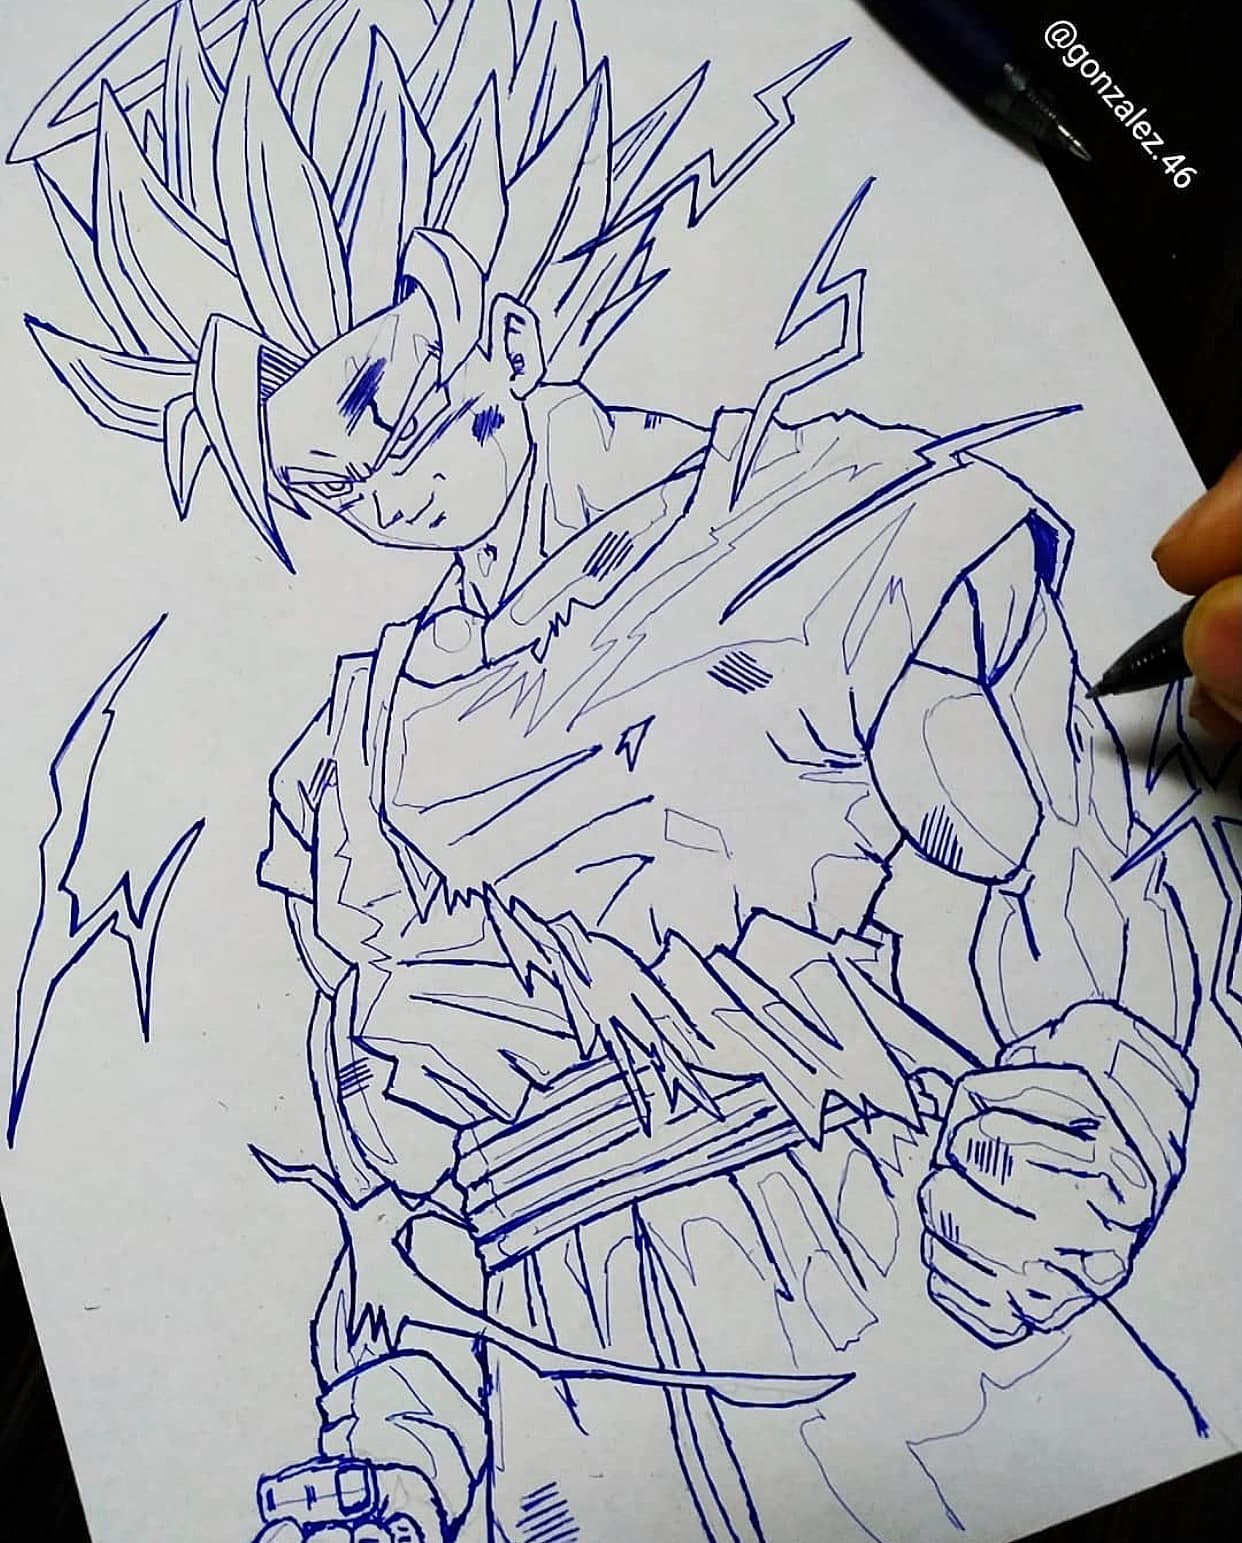 Ảnh vẽ nhân vật bằng bút bi: Người hâm mộ anime sẽ không thể bỏ qua bộ ảnh này. Hình vẽ nhân vật độc đáo và tuyệt vời với bút bi, mang lại cảm giác thích thú về nghệ thuật trong phong cách đầy sáng tạo.